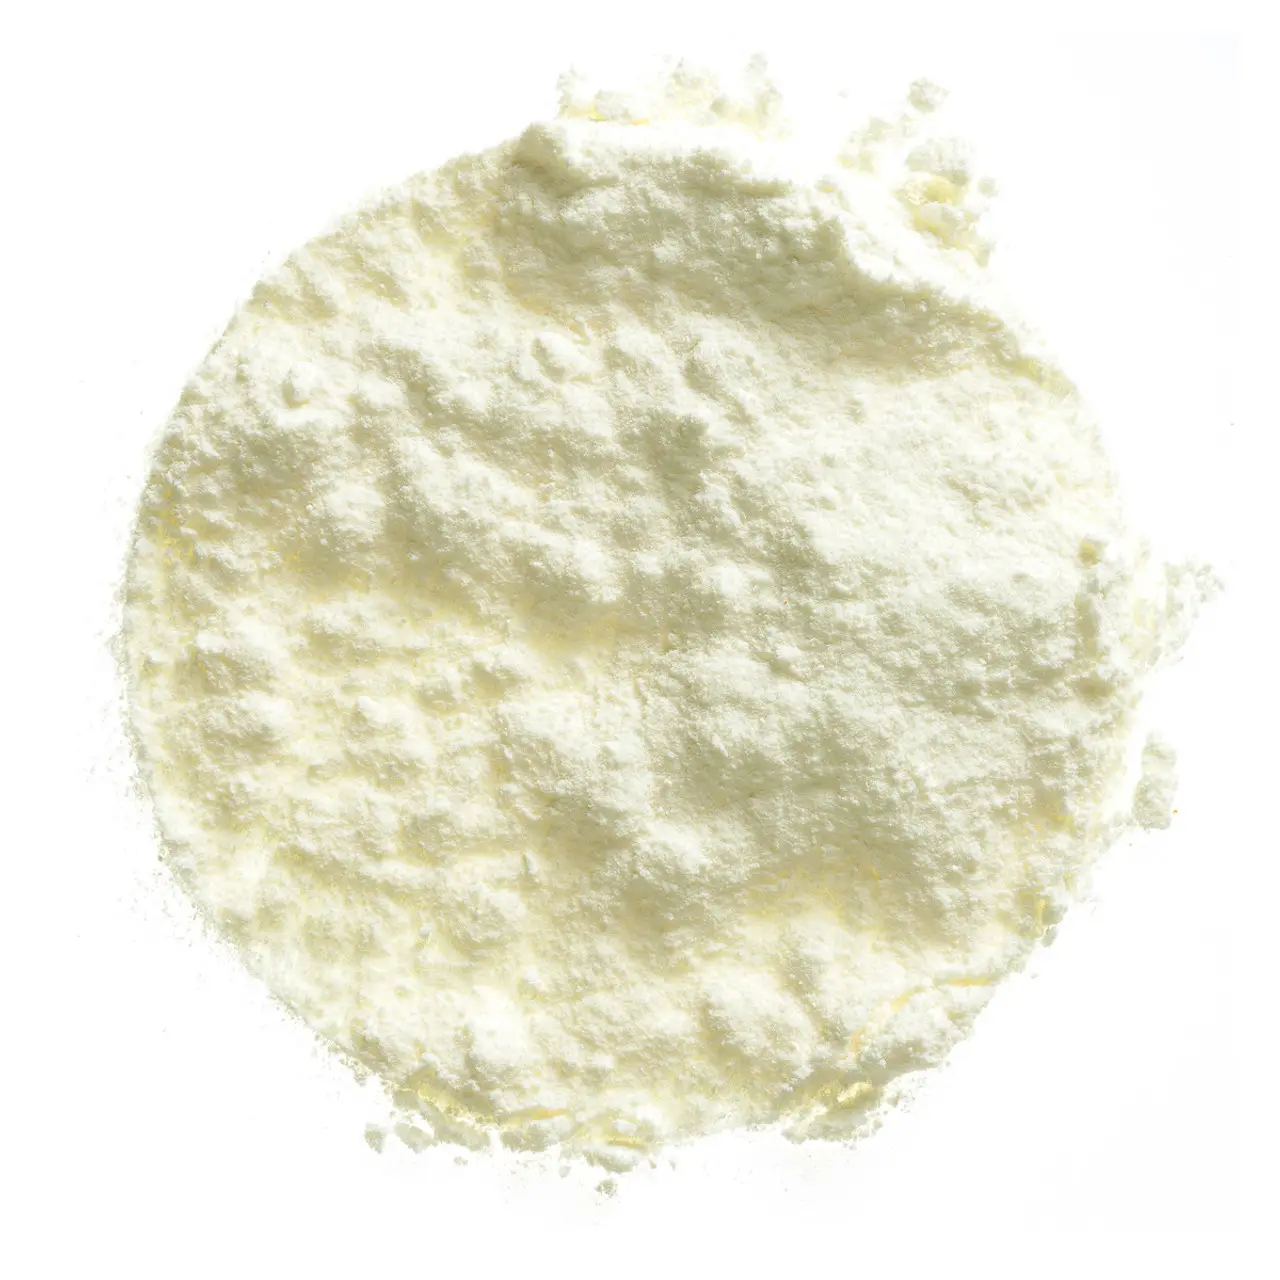 Wholesale quality dairy milk powder Whole Milk Powder / Skimmed Milk Powder High quality